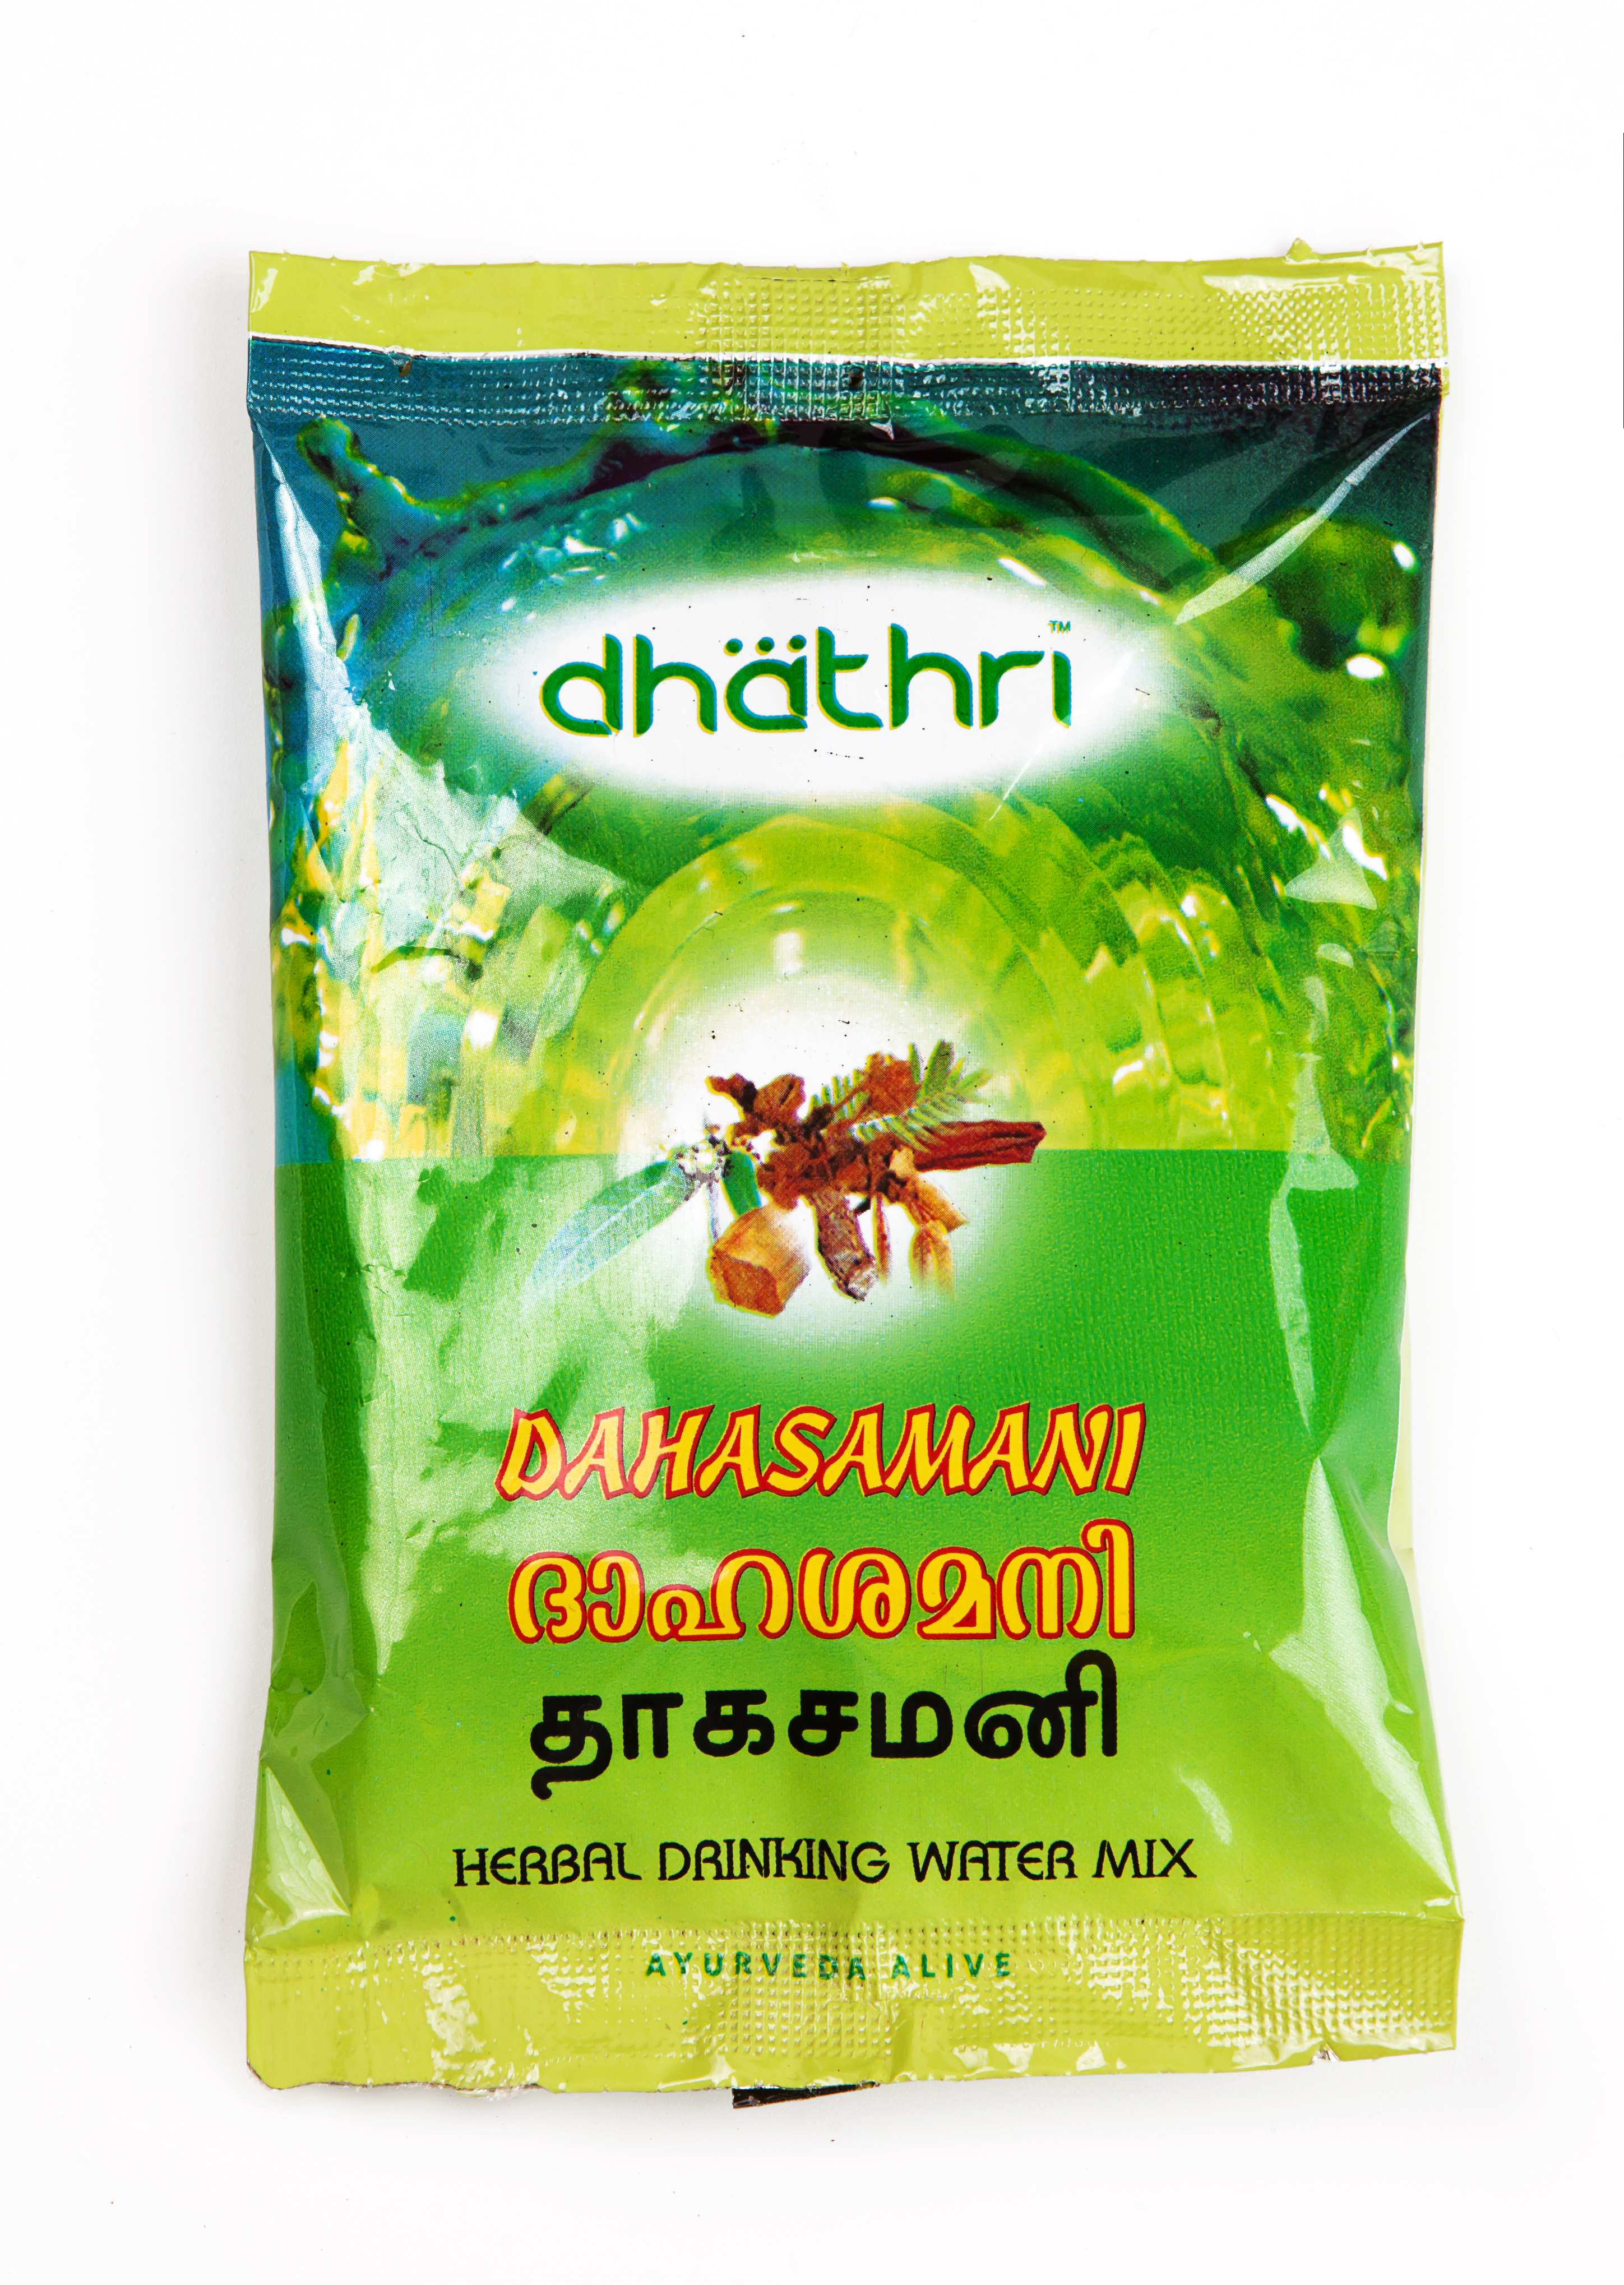 Аюрведический травяной чай Дахасамани 50 гр Dhathri (для очищения крови и улучшения пищеварения)